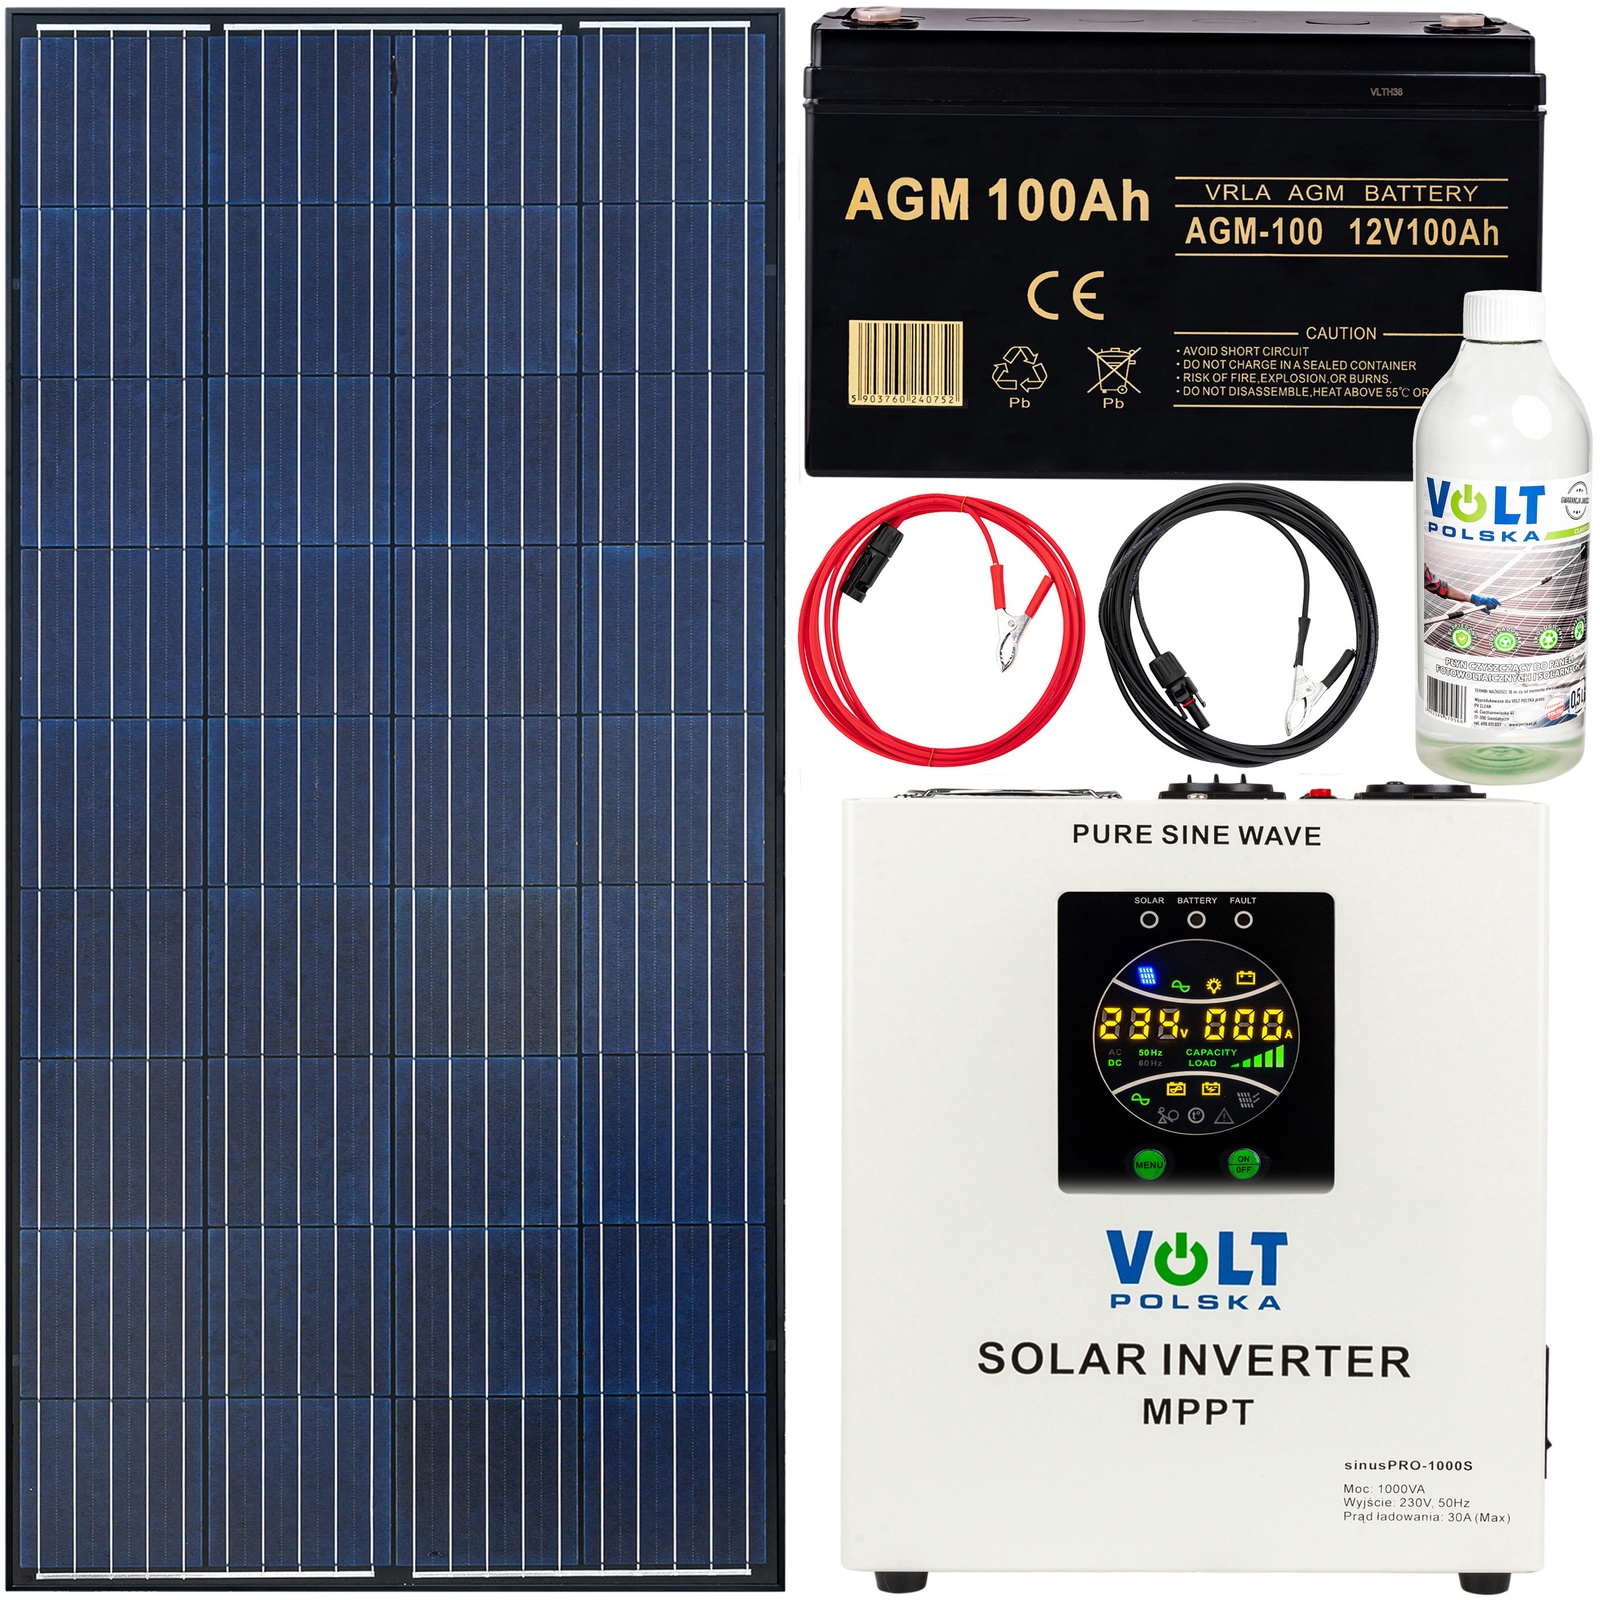 Image of Gotowy zestaw fotowoltaiczny 140w 100Ah (panel solarny, przetwornica 1000s, akumulator, przewody) + płyn VOLT POLSKA